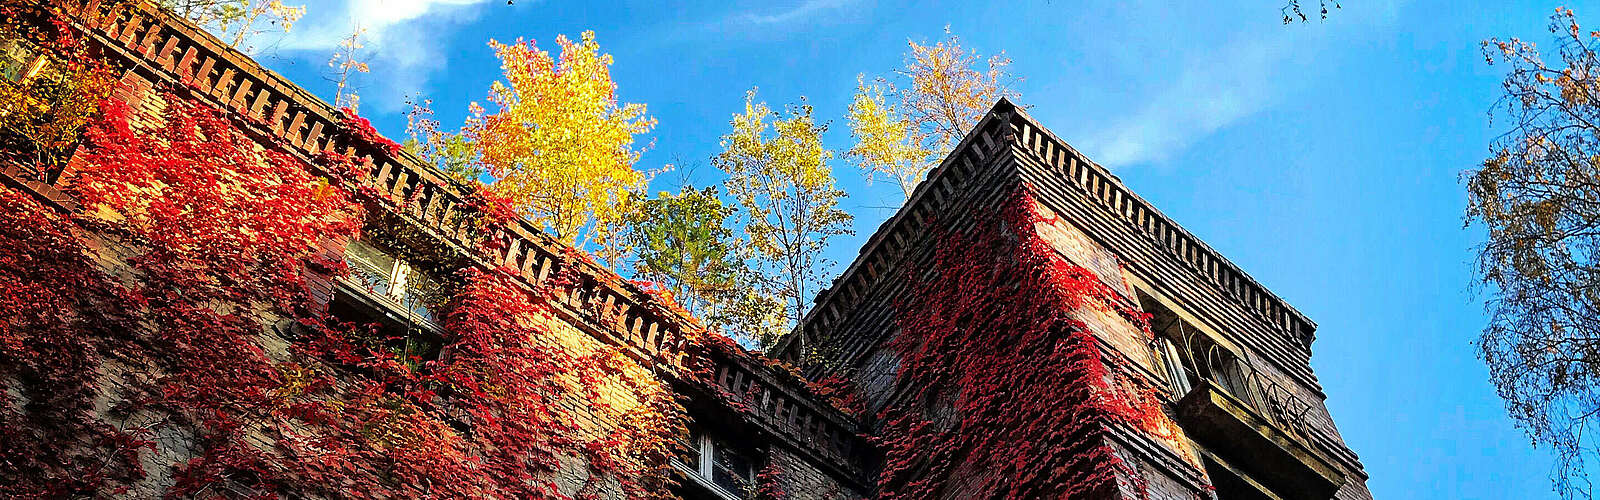 Beelitz Heilstätten im Herbst,
        
    

        Foto: TVF Fläming/Claudia Wegener